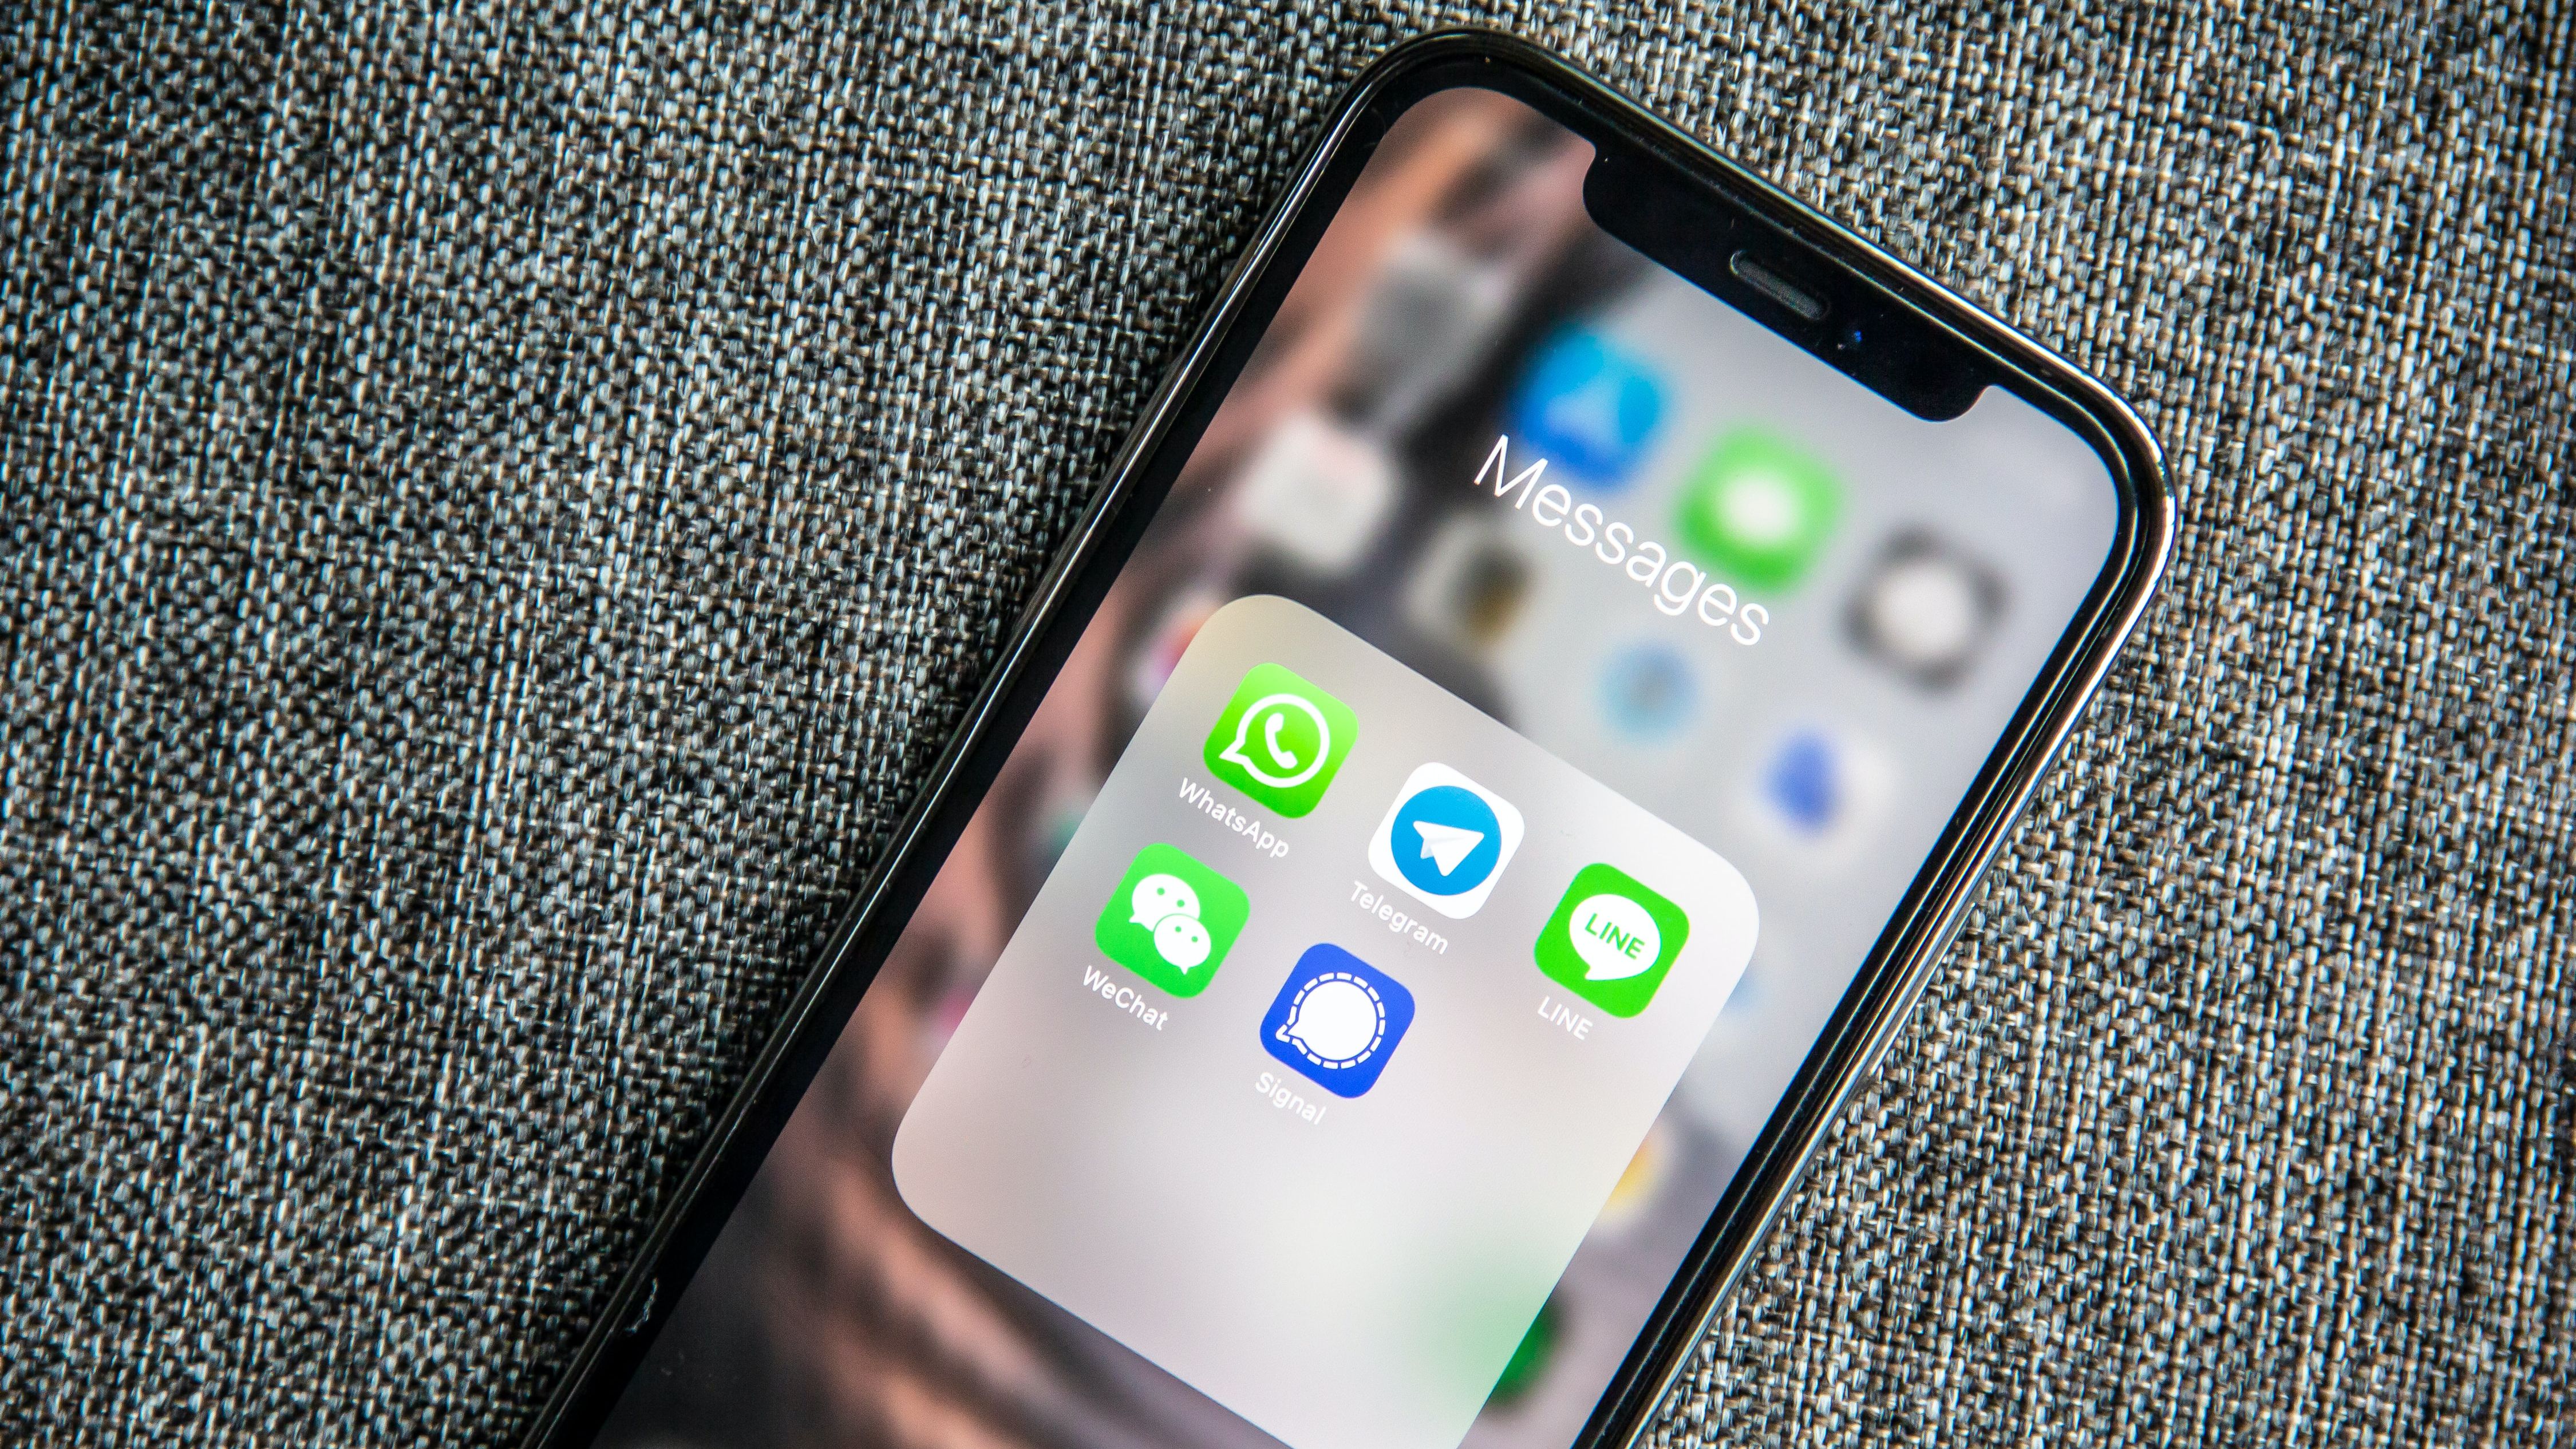 iMessage, WhatsApp e Telegram: qual é o melhor mensageiro